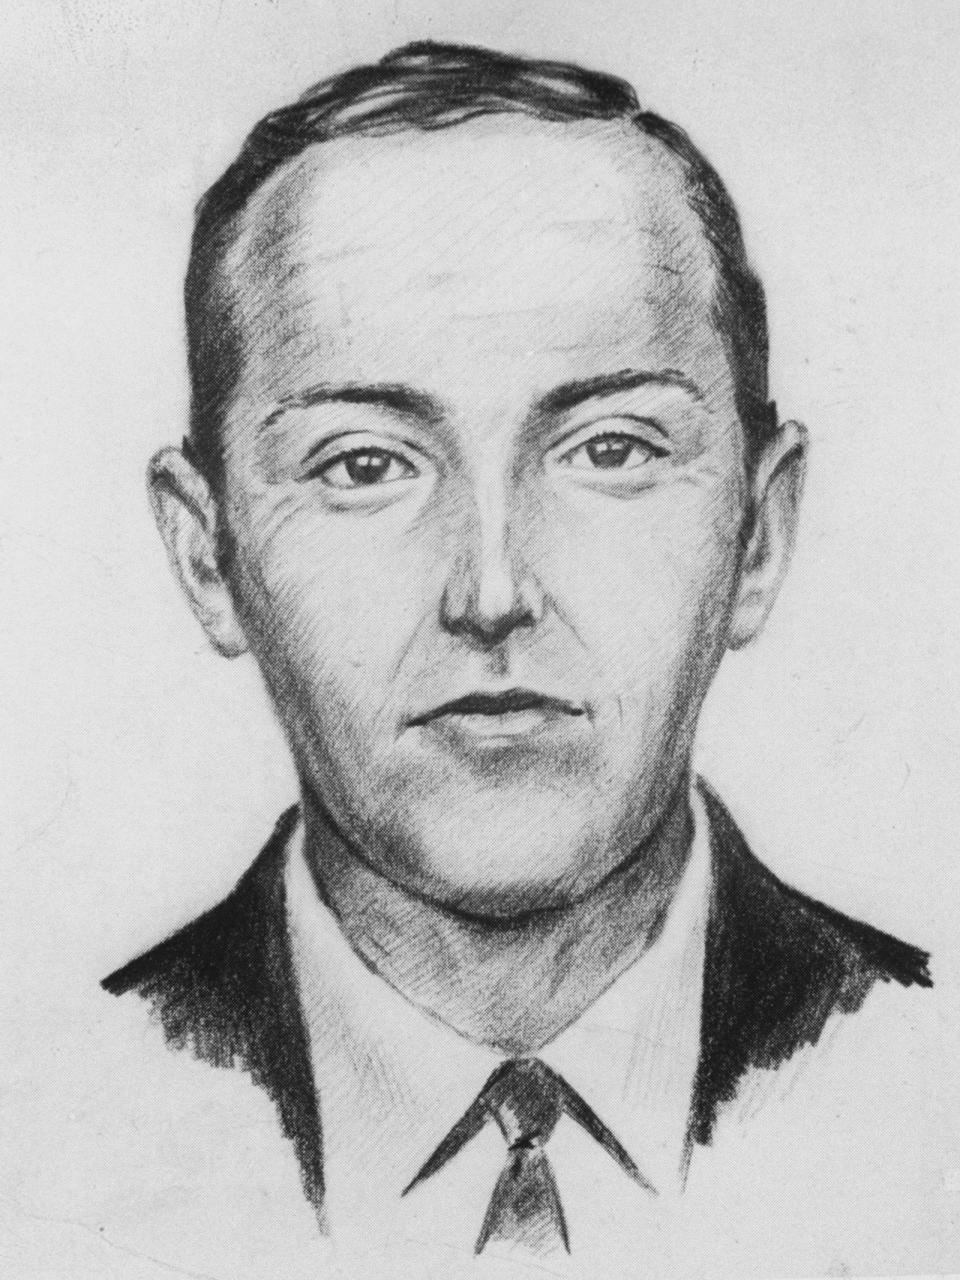 Die Entführung von D. B. Cooper - hier ist eine Fahndungsillustration zu sehen - gilt in den USA als bekannter Kriminalfall. Hierzulande eher weniger. (Bild: PR / HISTORY / Getty / Time Life)